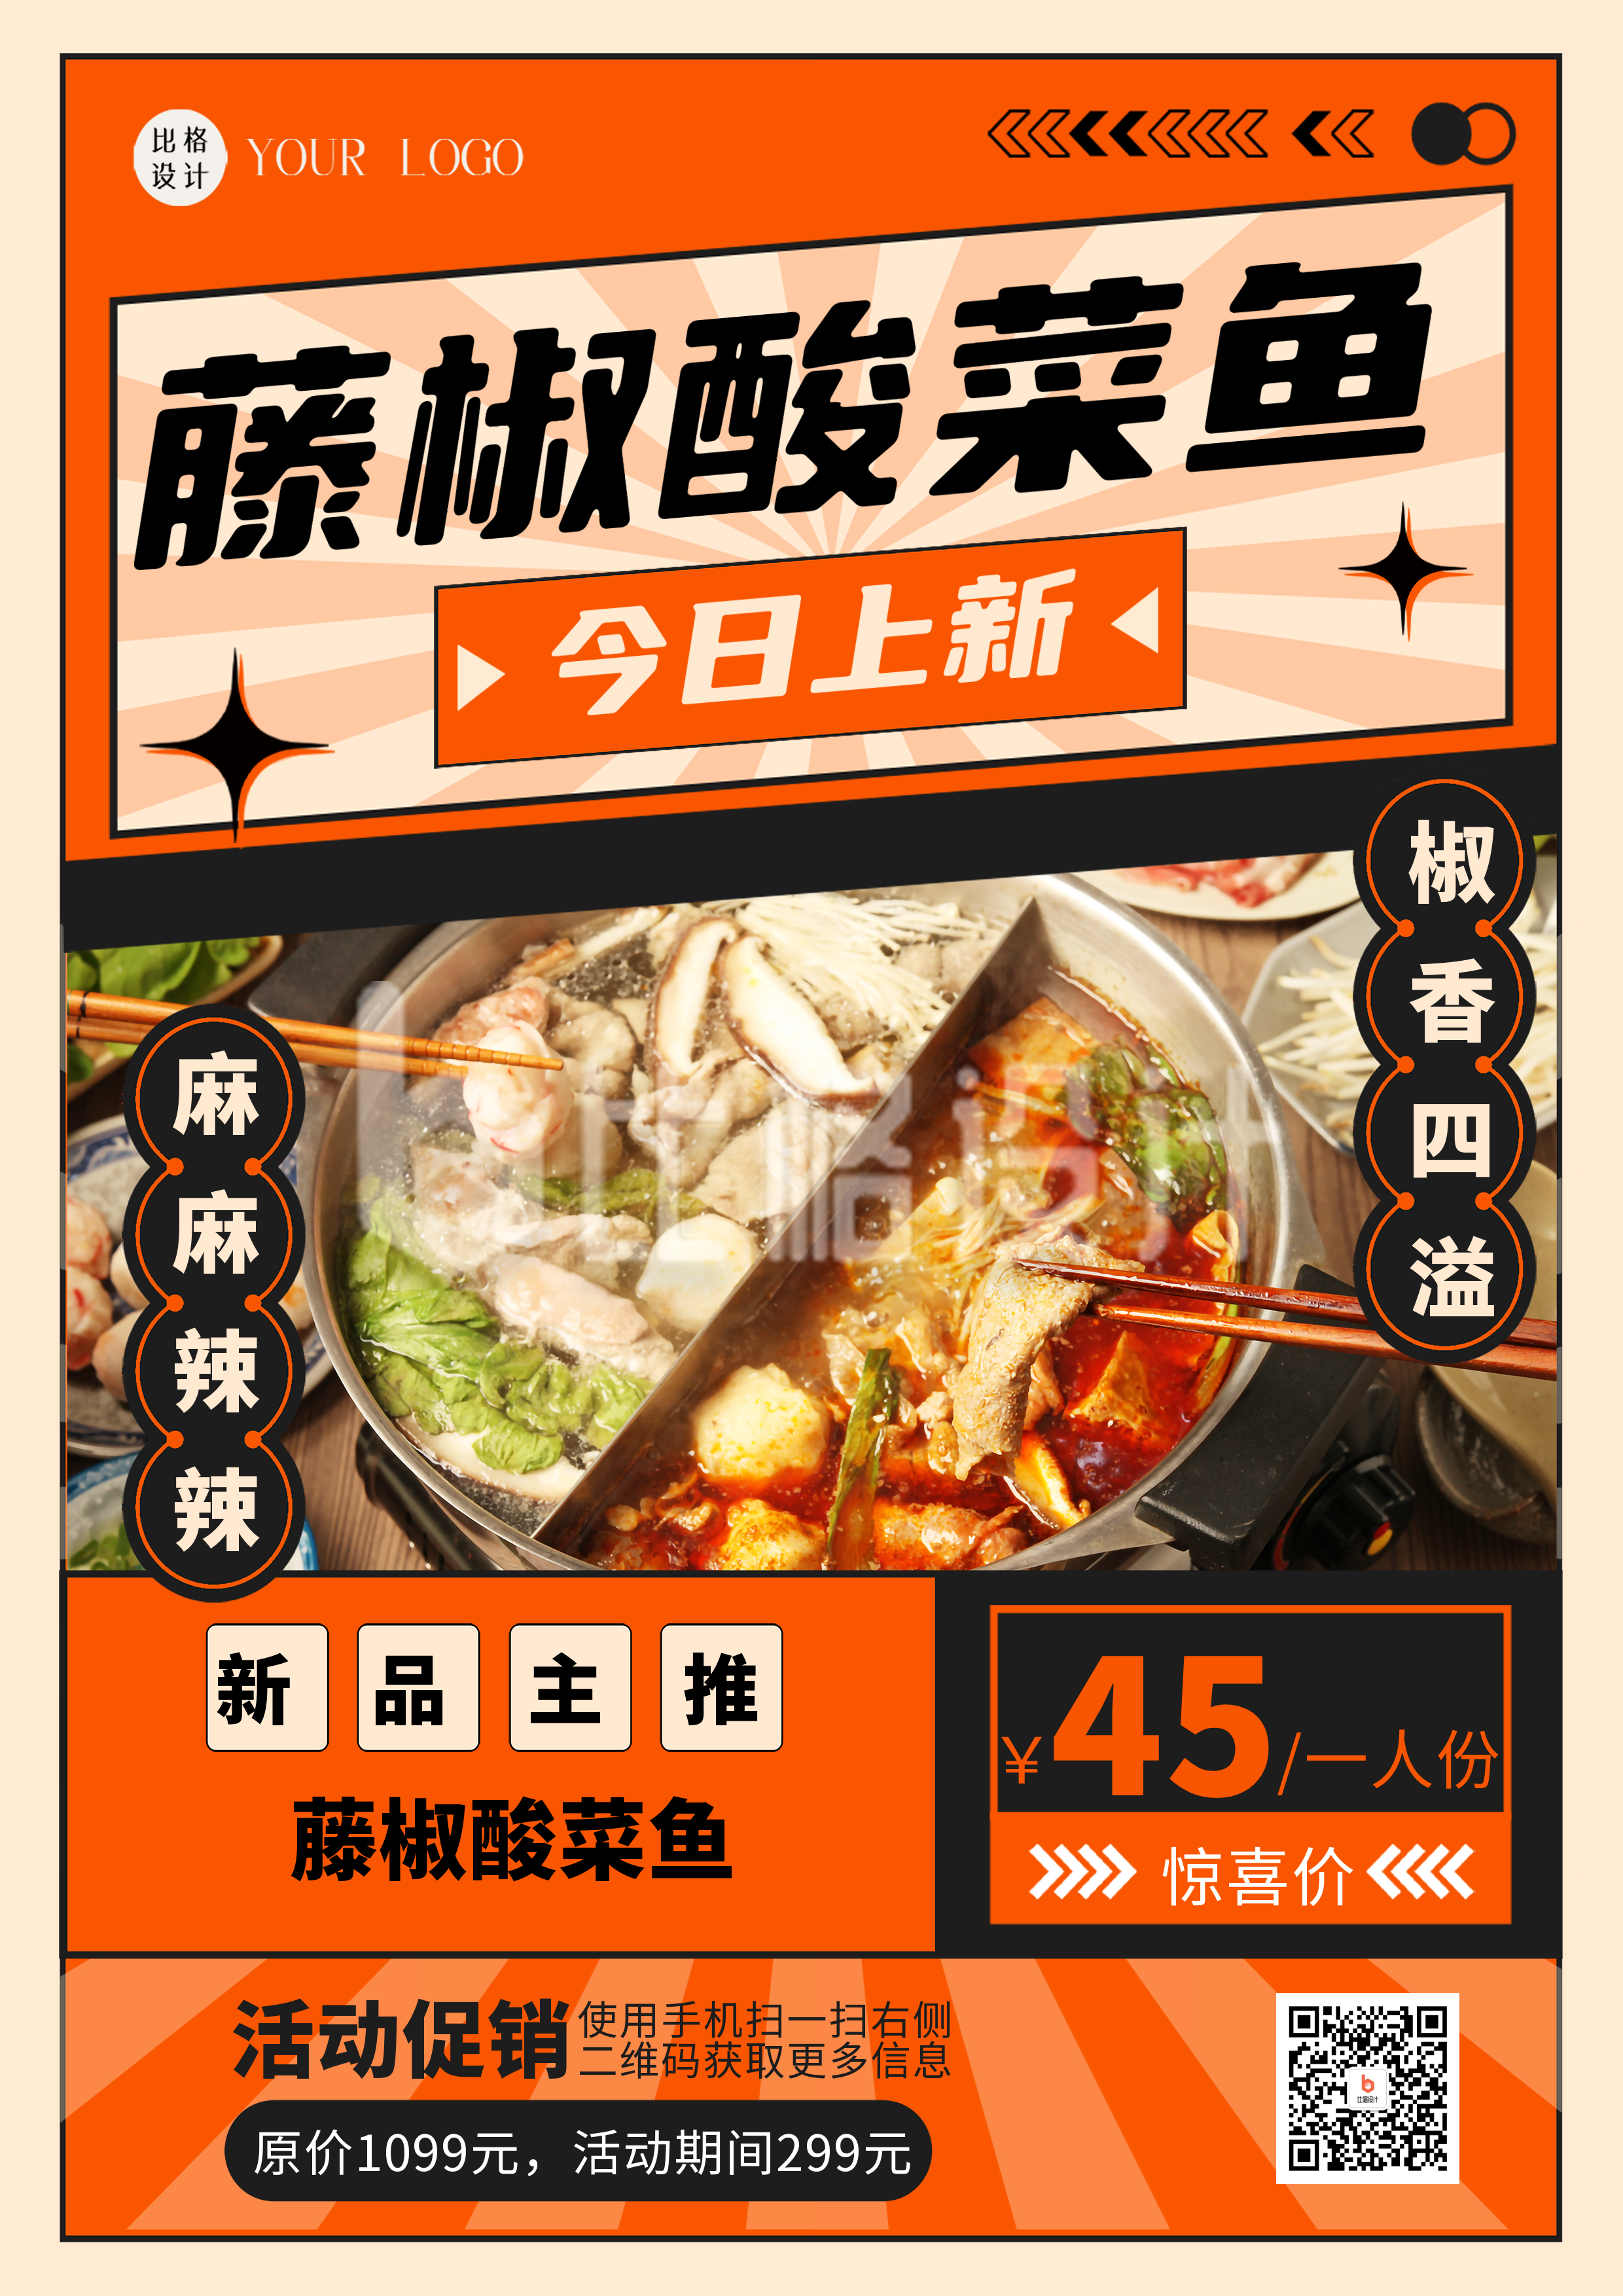 橙色实景酸菜鱼促销DM印刷宣传单